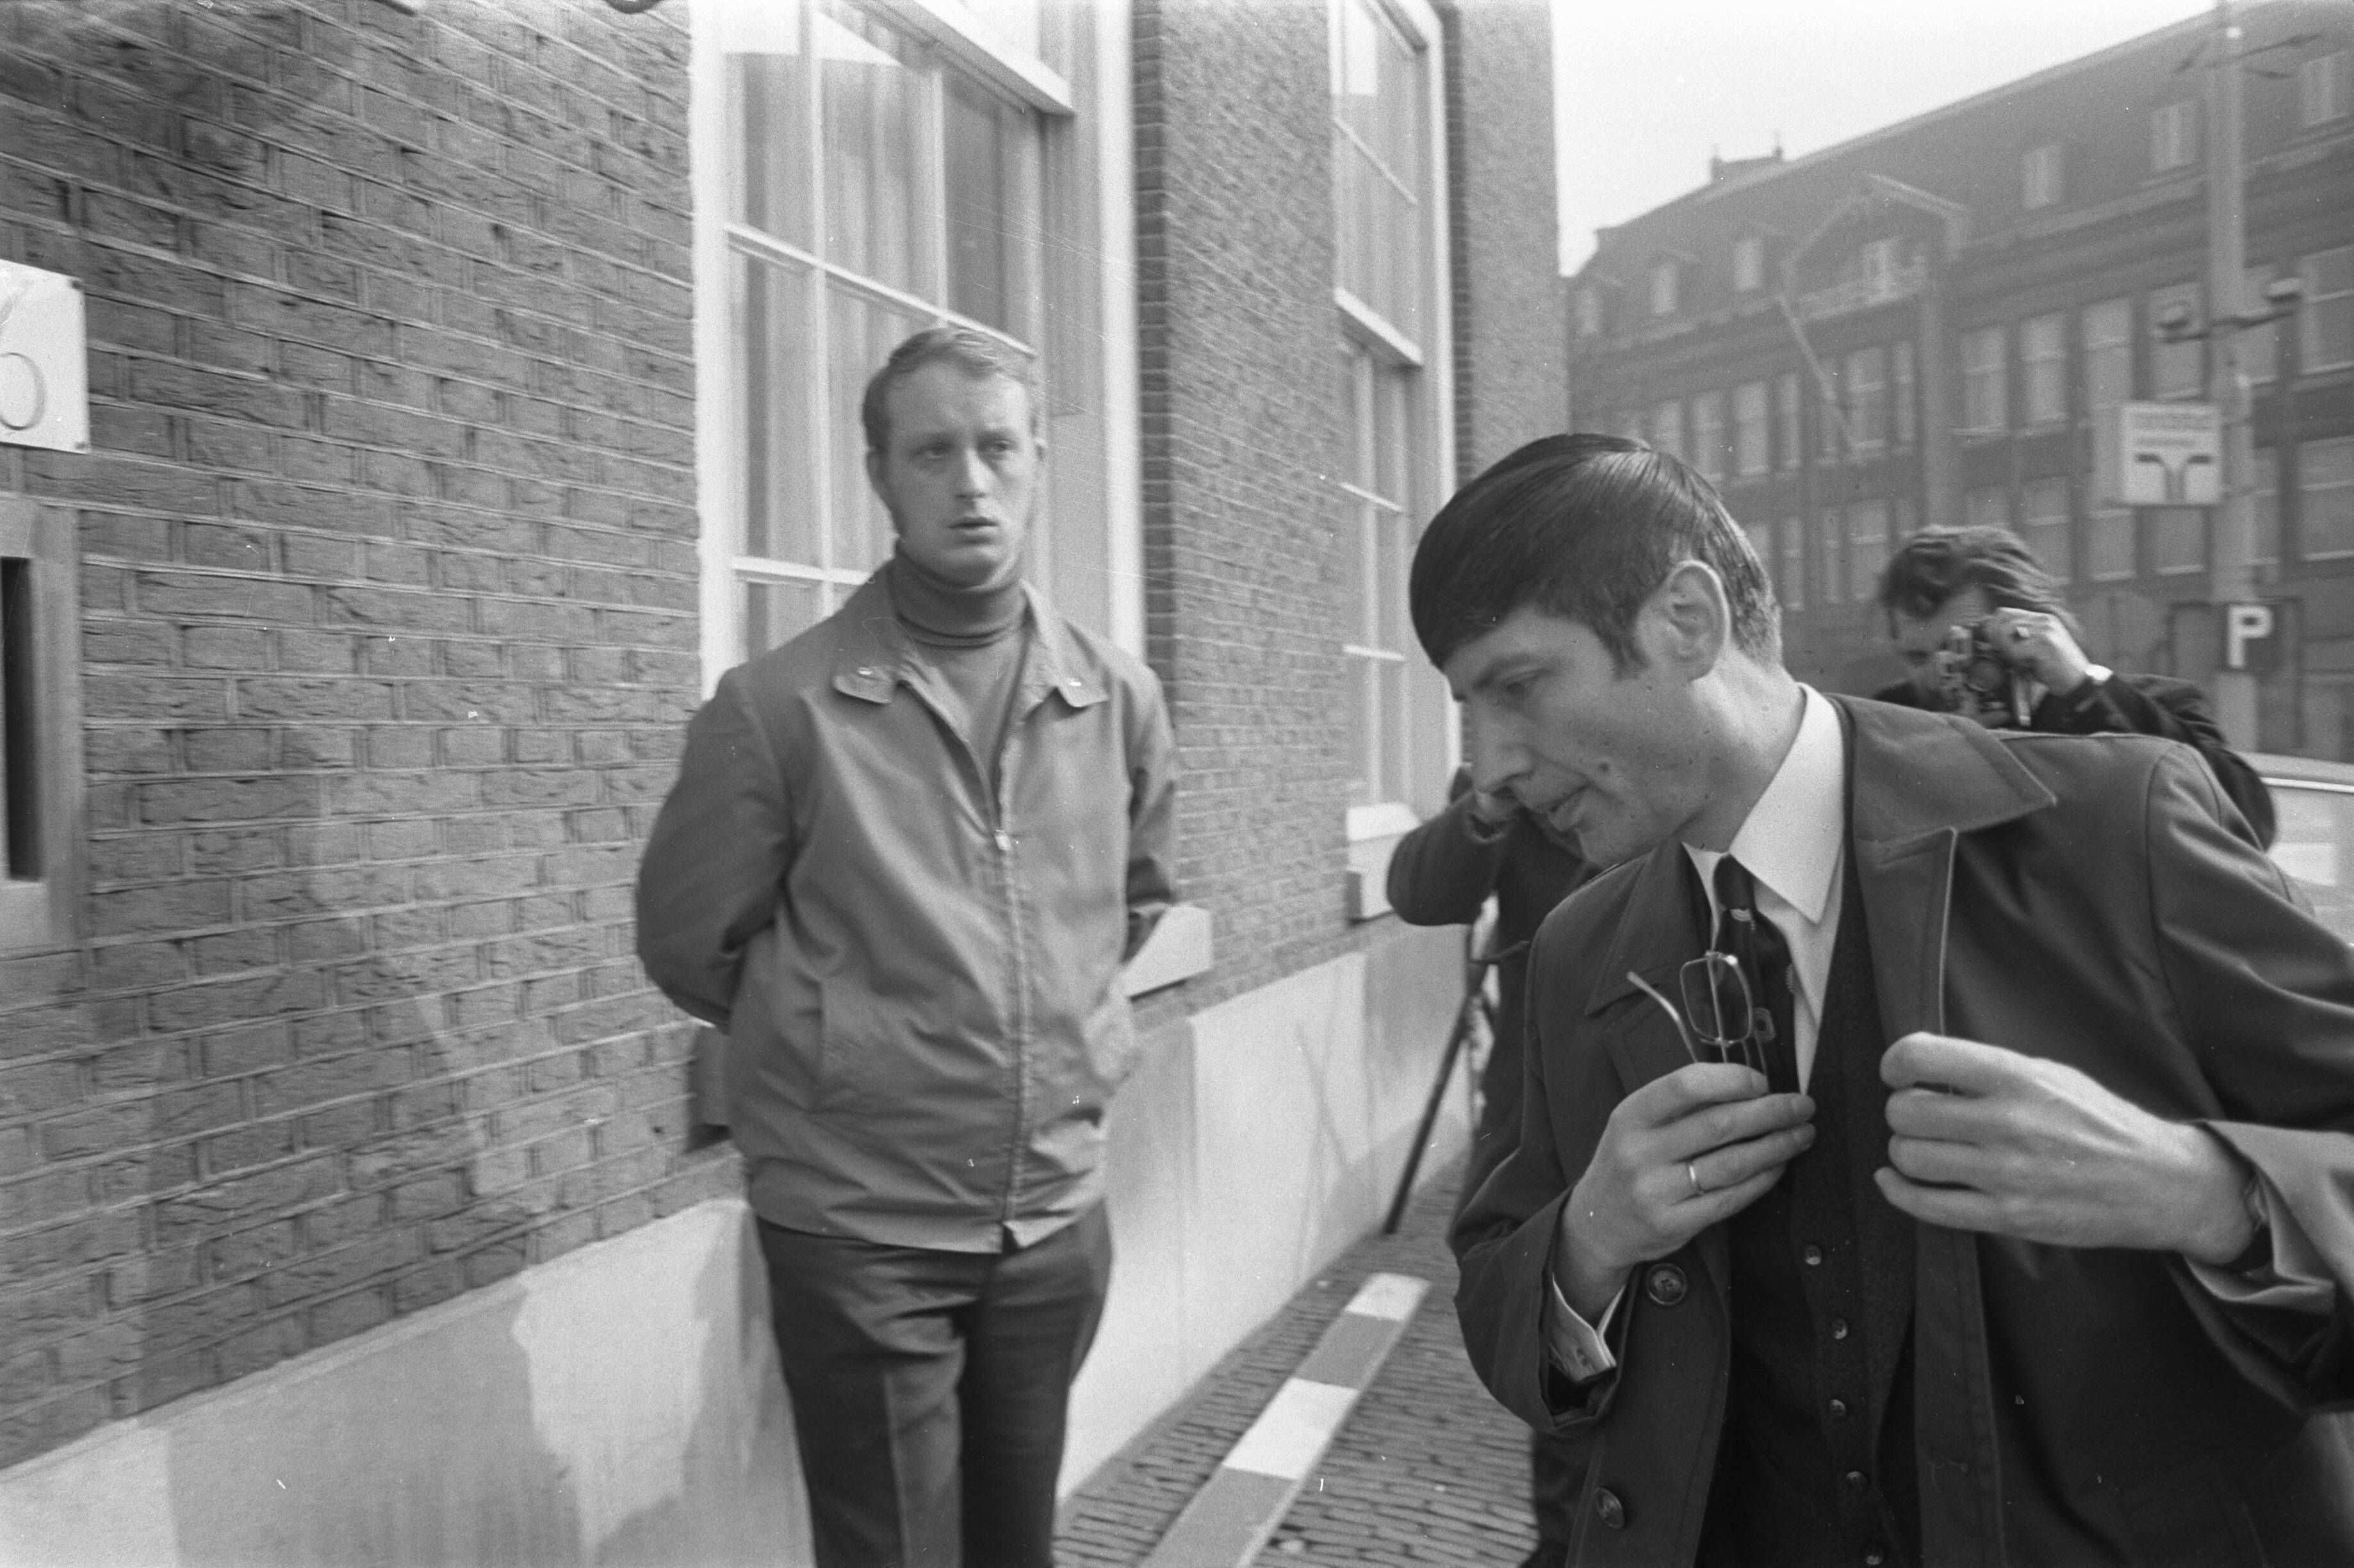 1972: Een jonge Van Agt als minister van Justitie krijgt de woede van het volk over zich heen. De demonstratie is tegen de vrijlating van de Drie van Breda. Hij krijgt zware bewaking, terwijl hij zich haast op het Binnenhof.